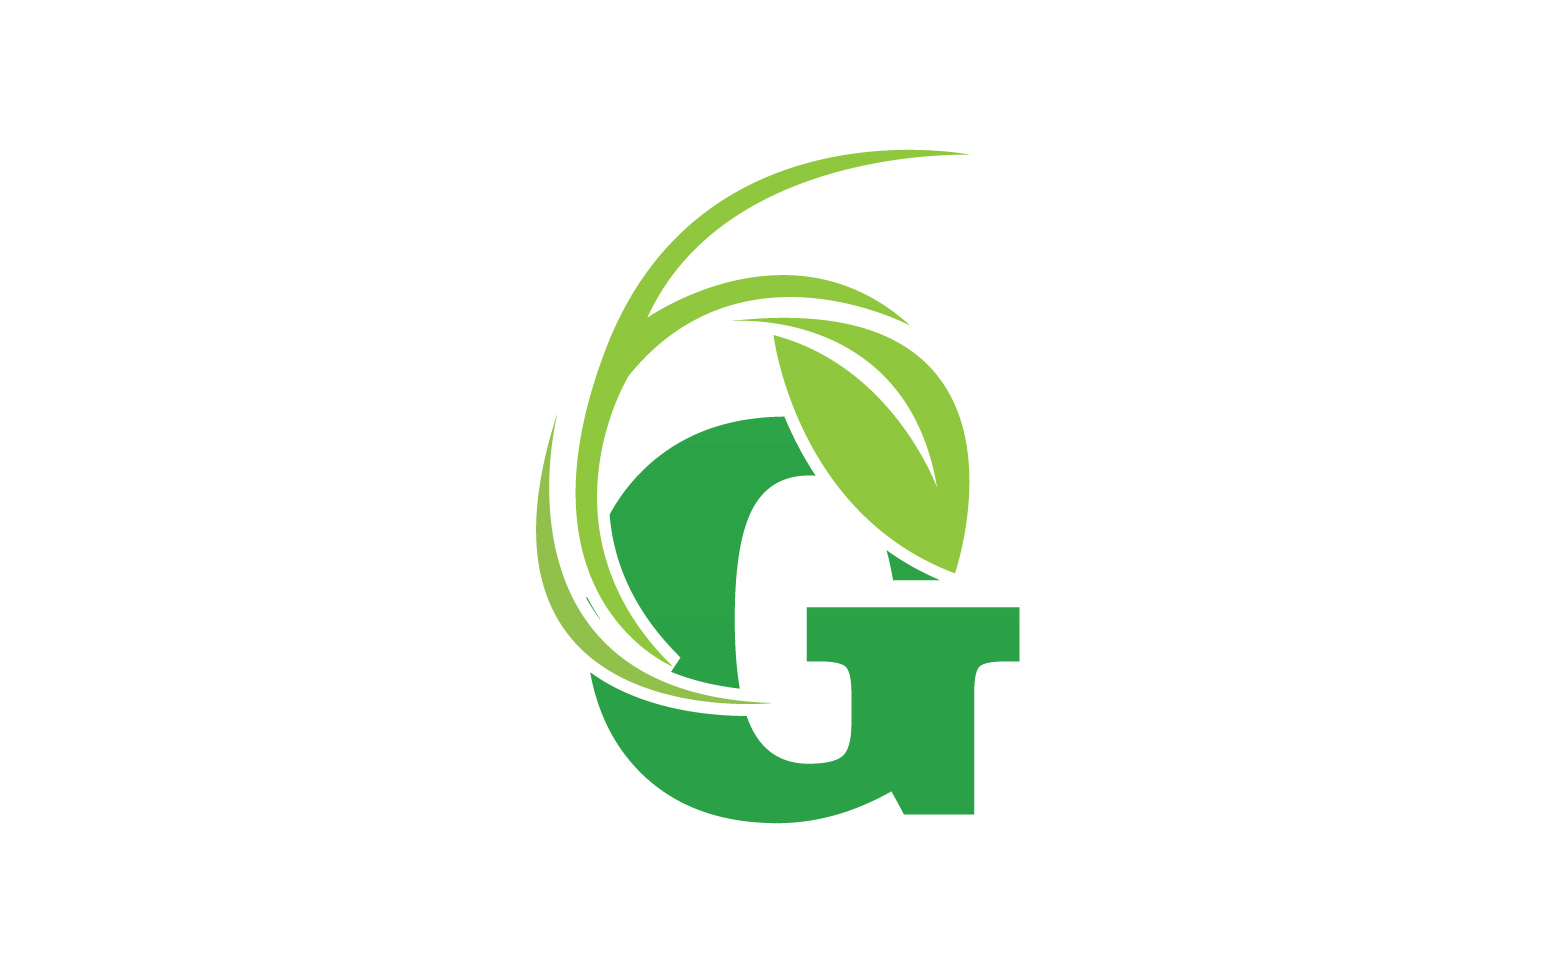 G letter leaf green logo icon version v22